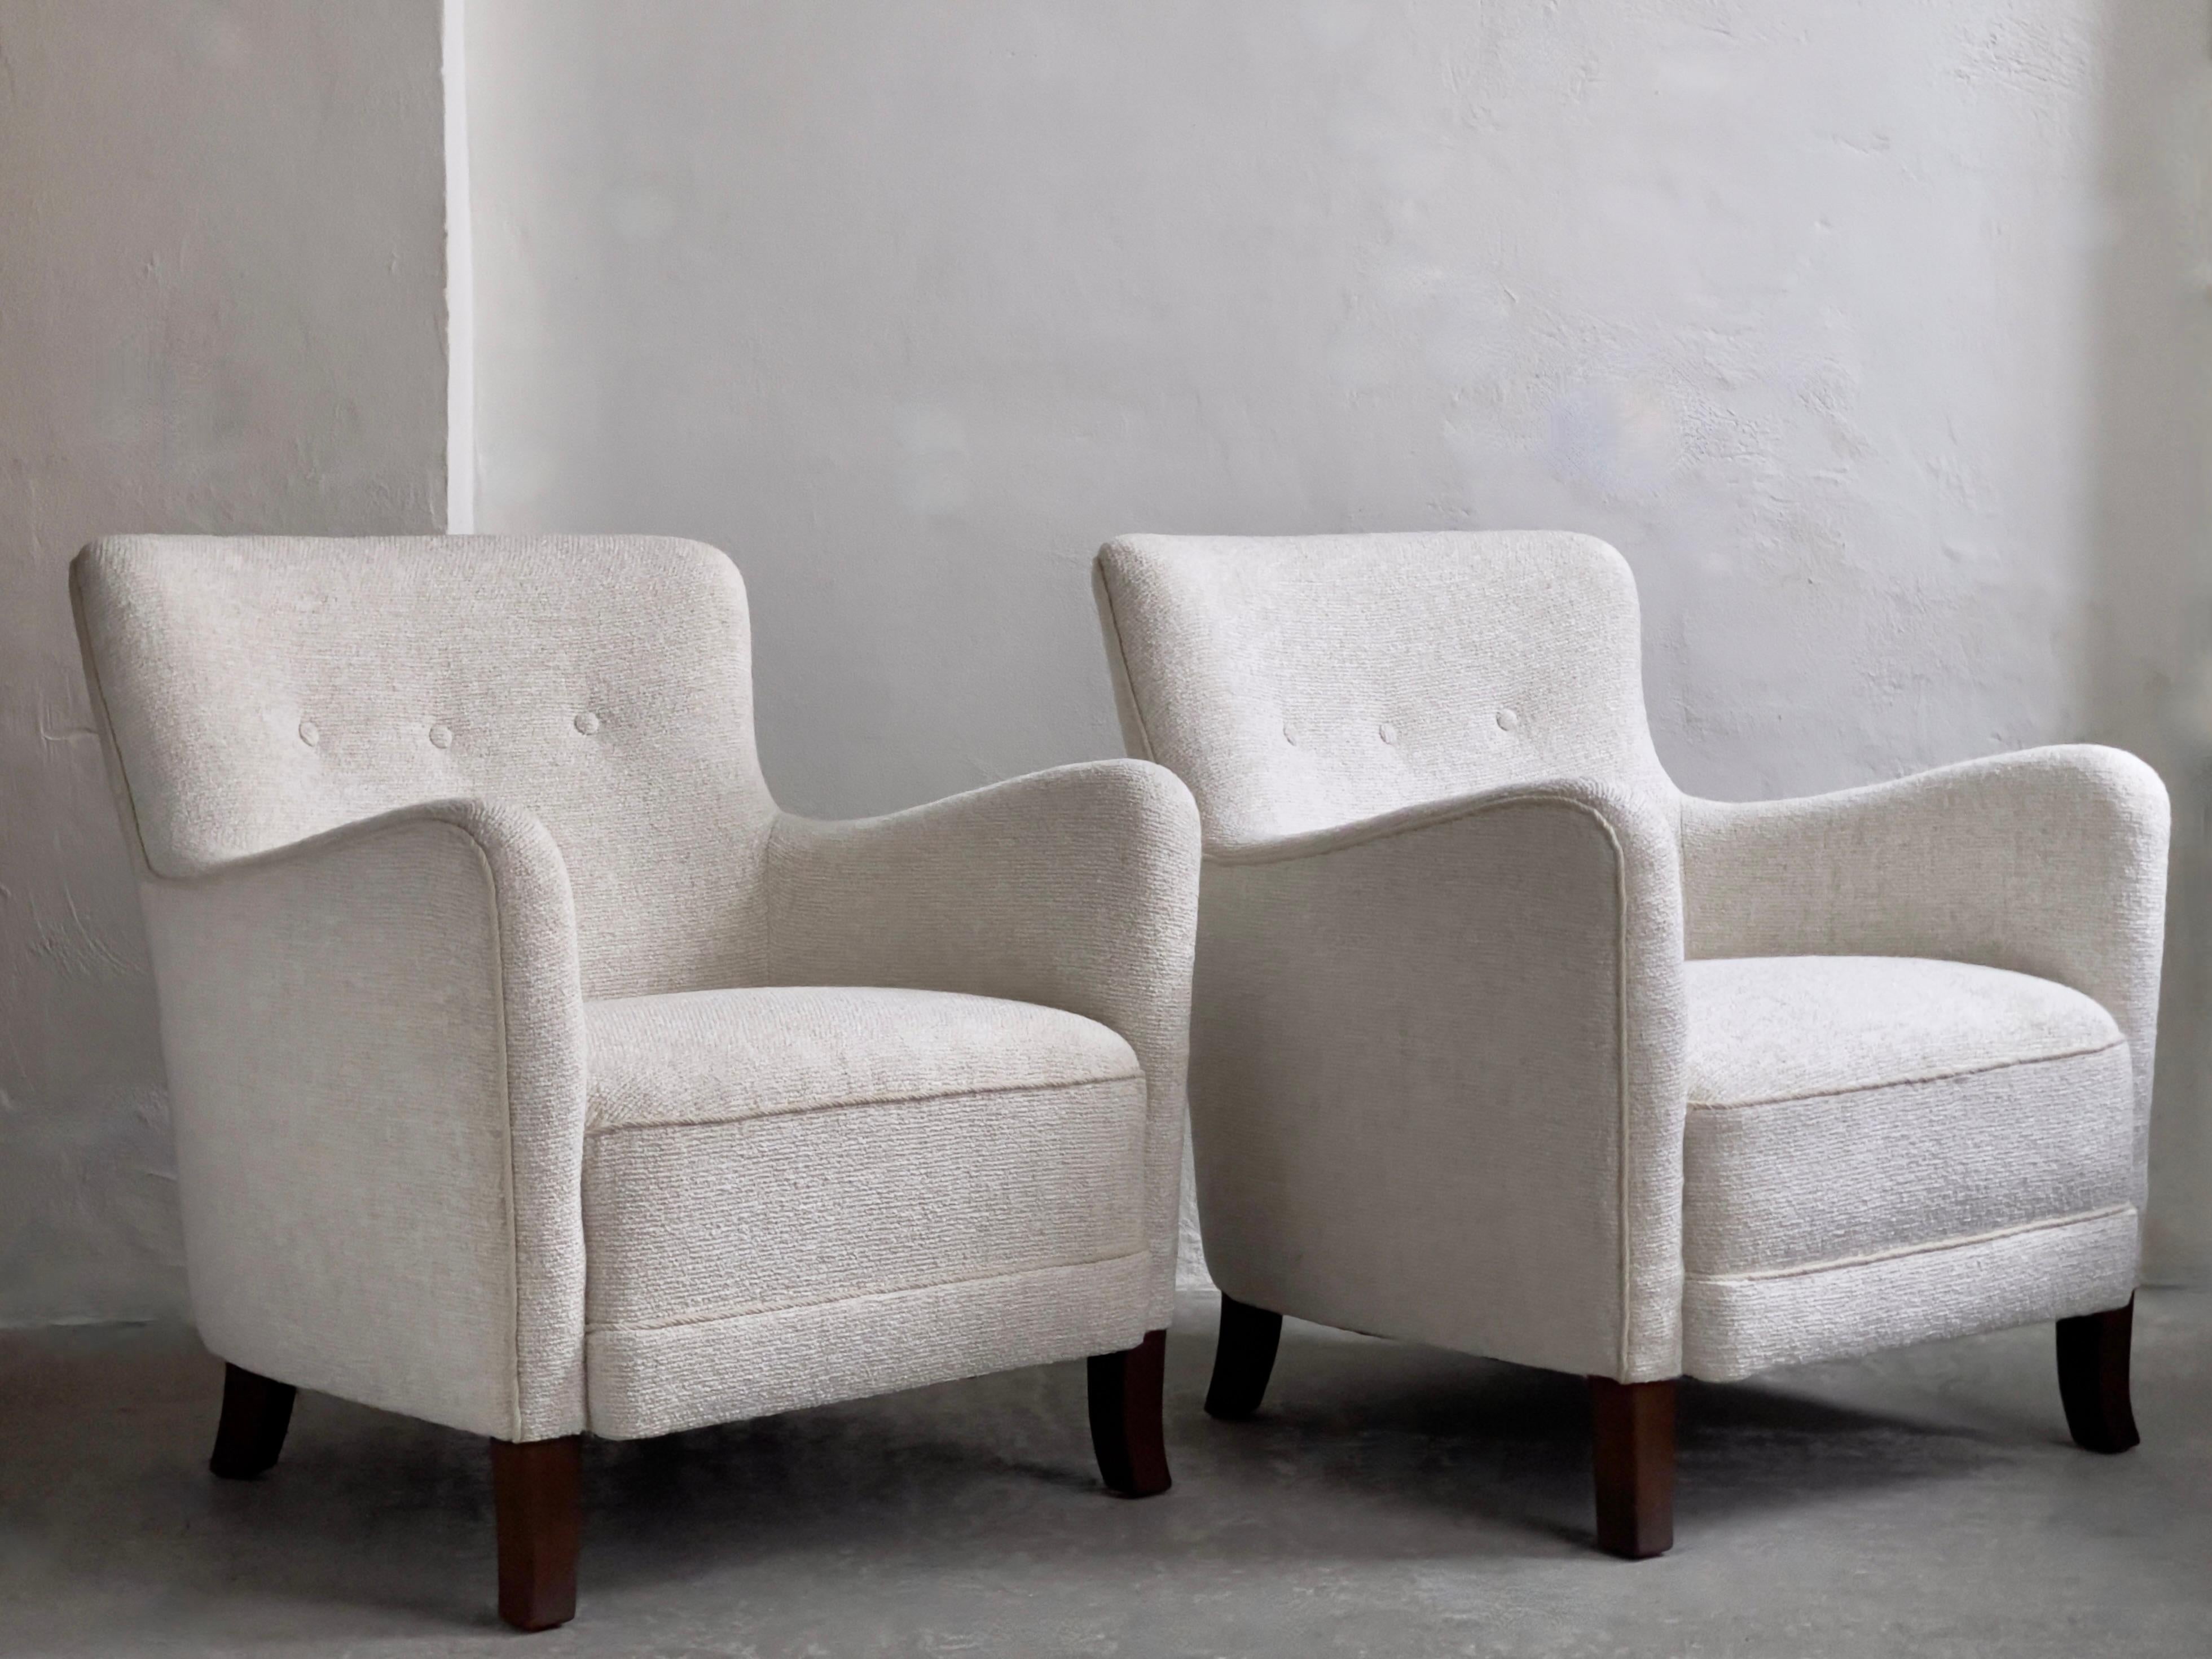 Paire de chaises de salon danoises des années 1930 entièrement restaurées et retapissées avec du tissu contemporain Design/One Kvadrat conçu par Vincent van Duysen et Anna Vilhelmine Ebbesen.

Dans les annales du design danois du milieu du XXe